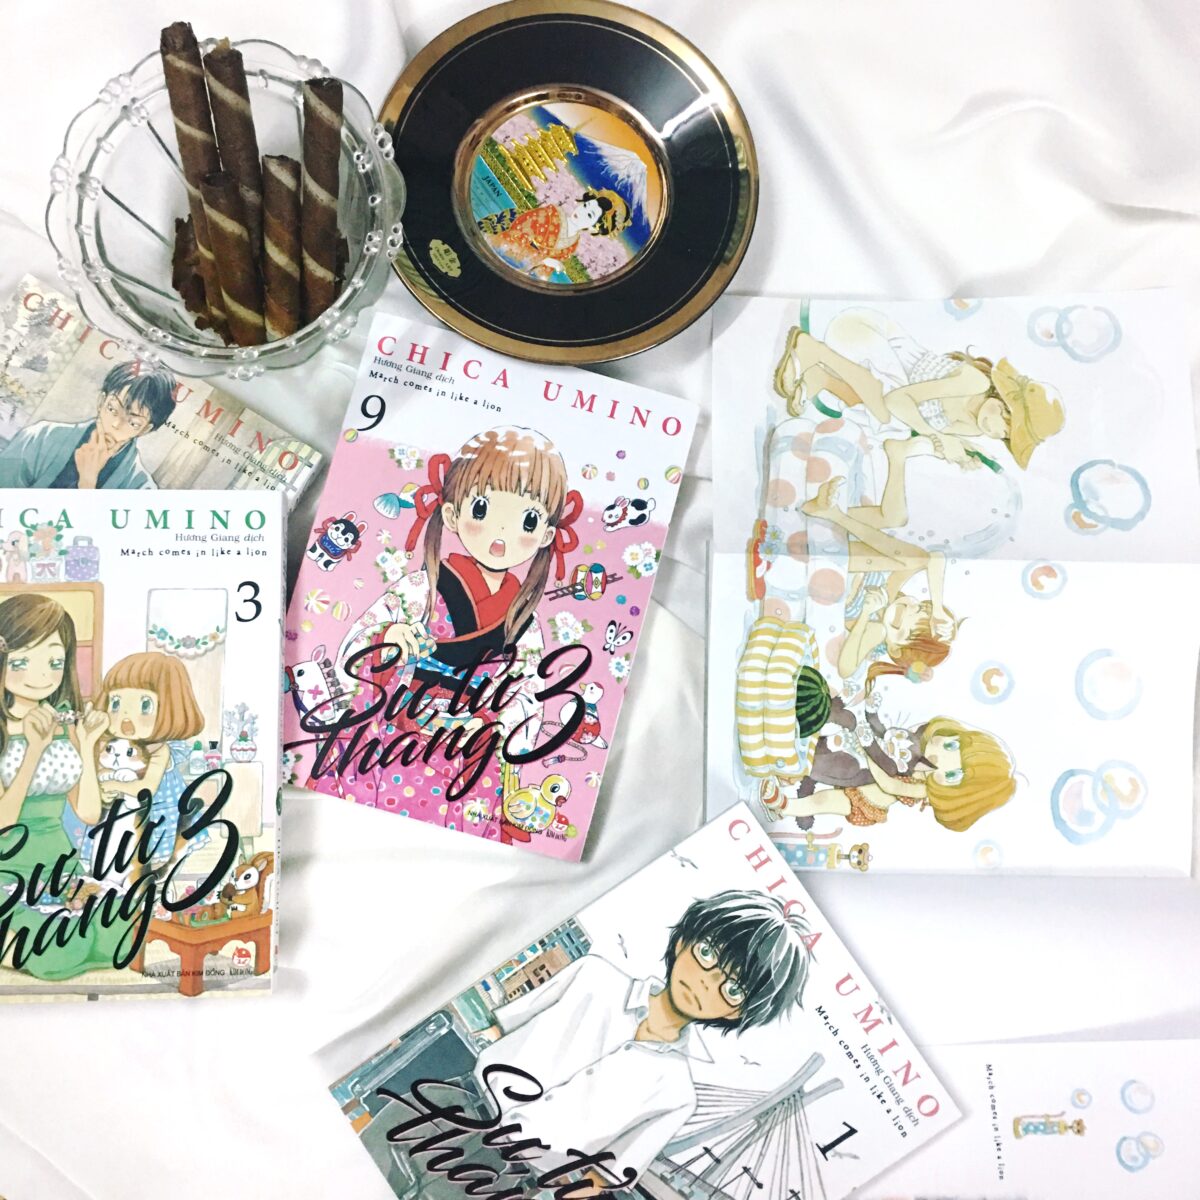 Đánh giá manga “Sư tử tháng 3” – Chica Umino